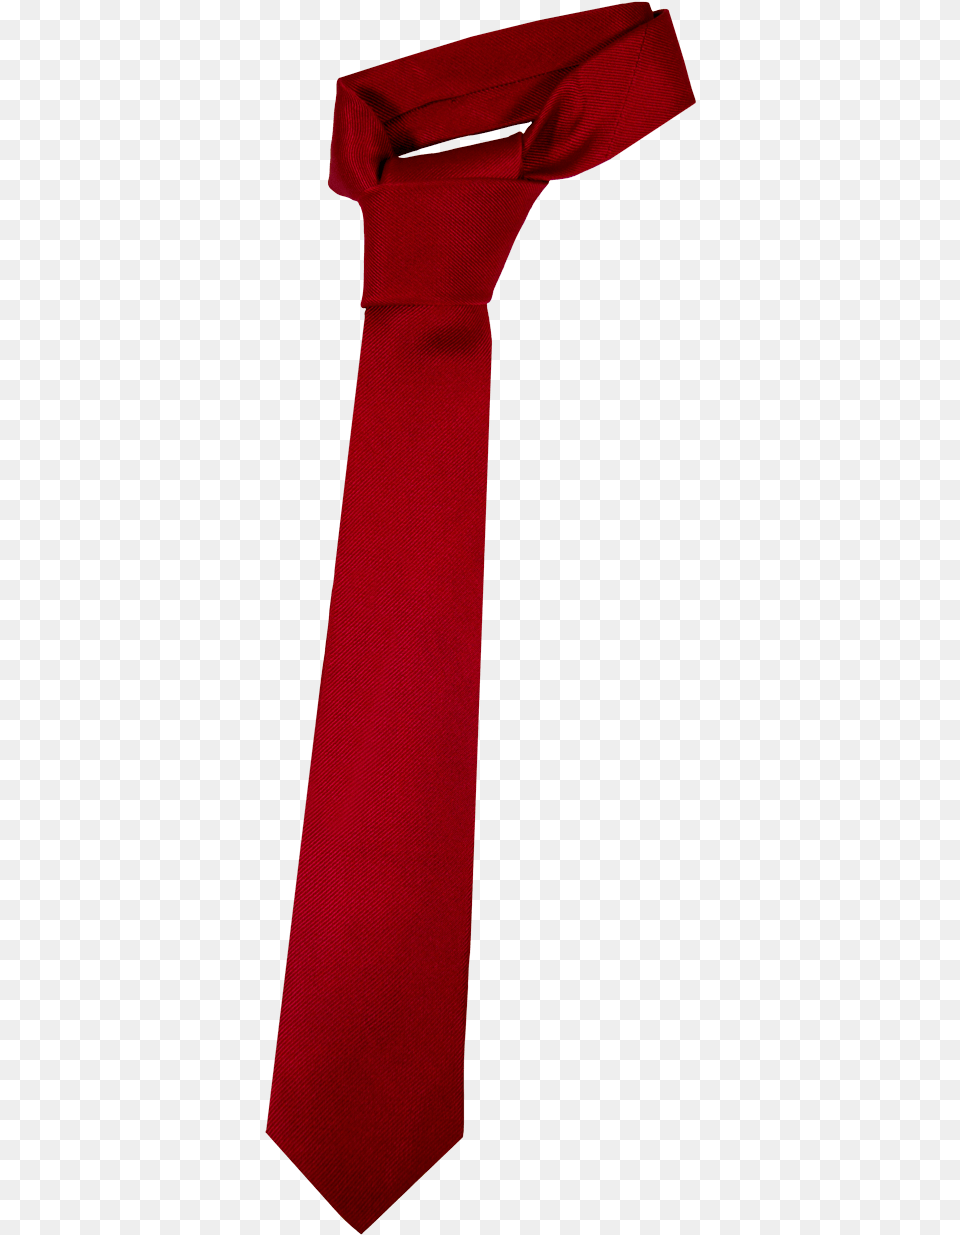 Red Tie Satin, Accessories, Formal Wear, Necktie Free Png